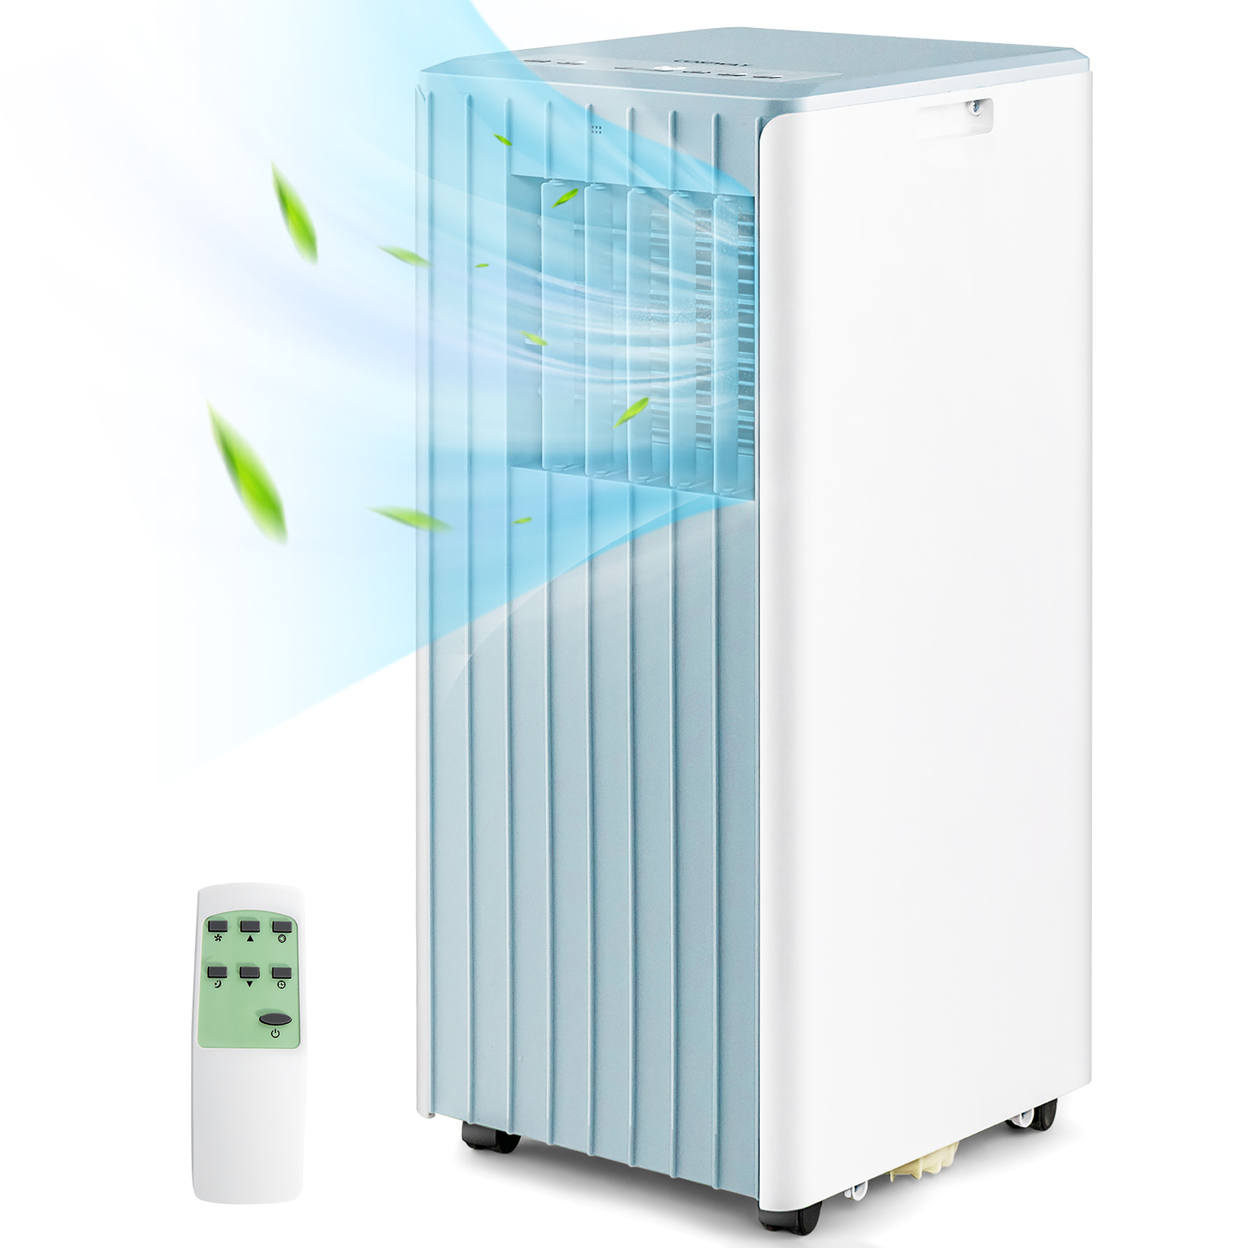 Portable Air Conditioner 10000 BTU ASHRAE 3-in-1 AC Unit W/ Humidifier & Sleep Mode - White + Blue